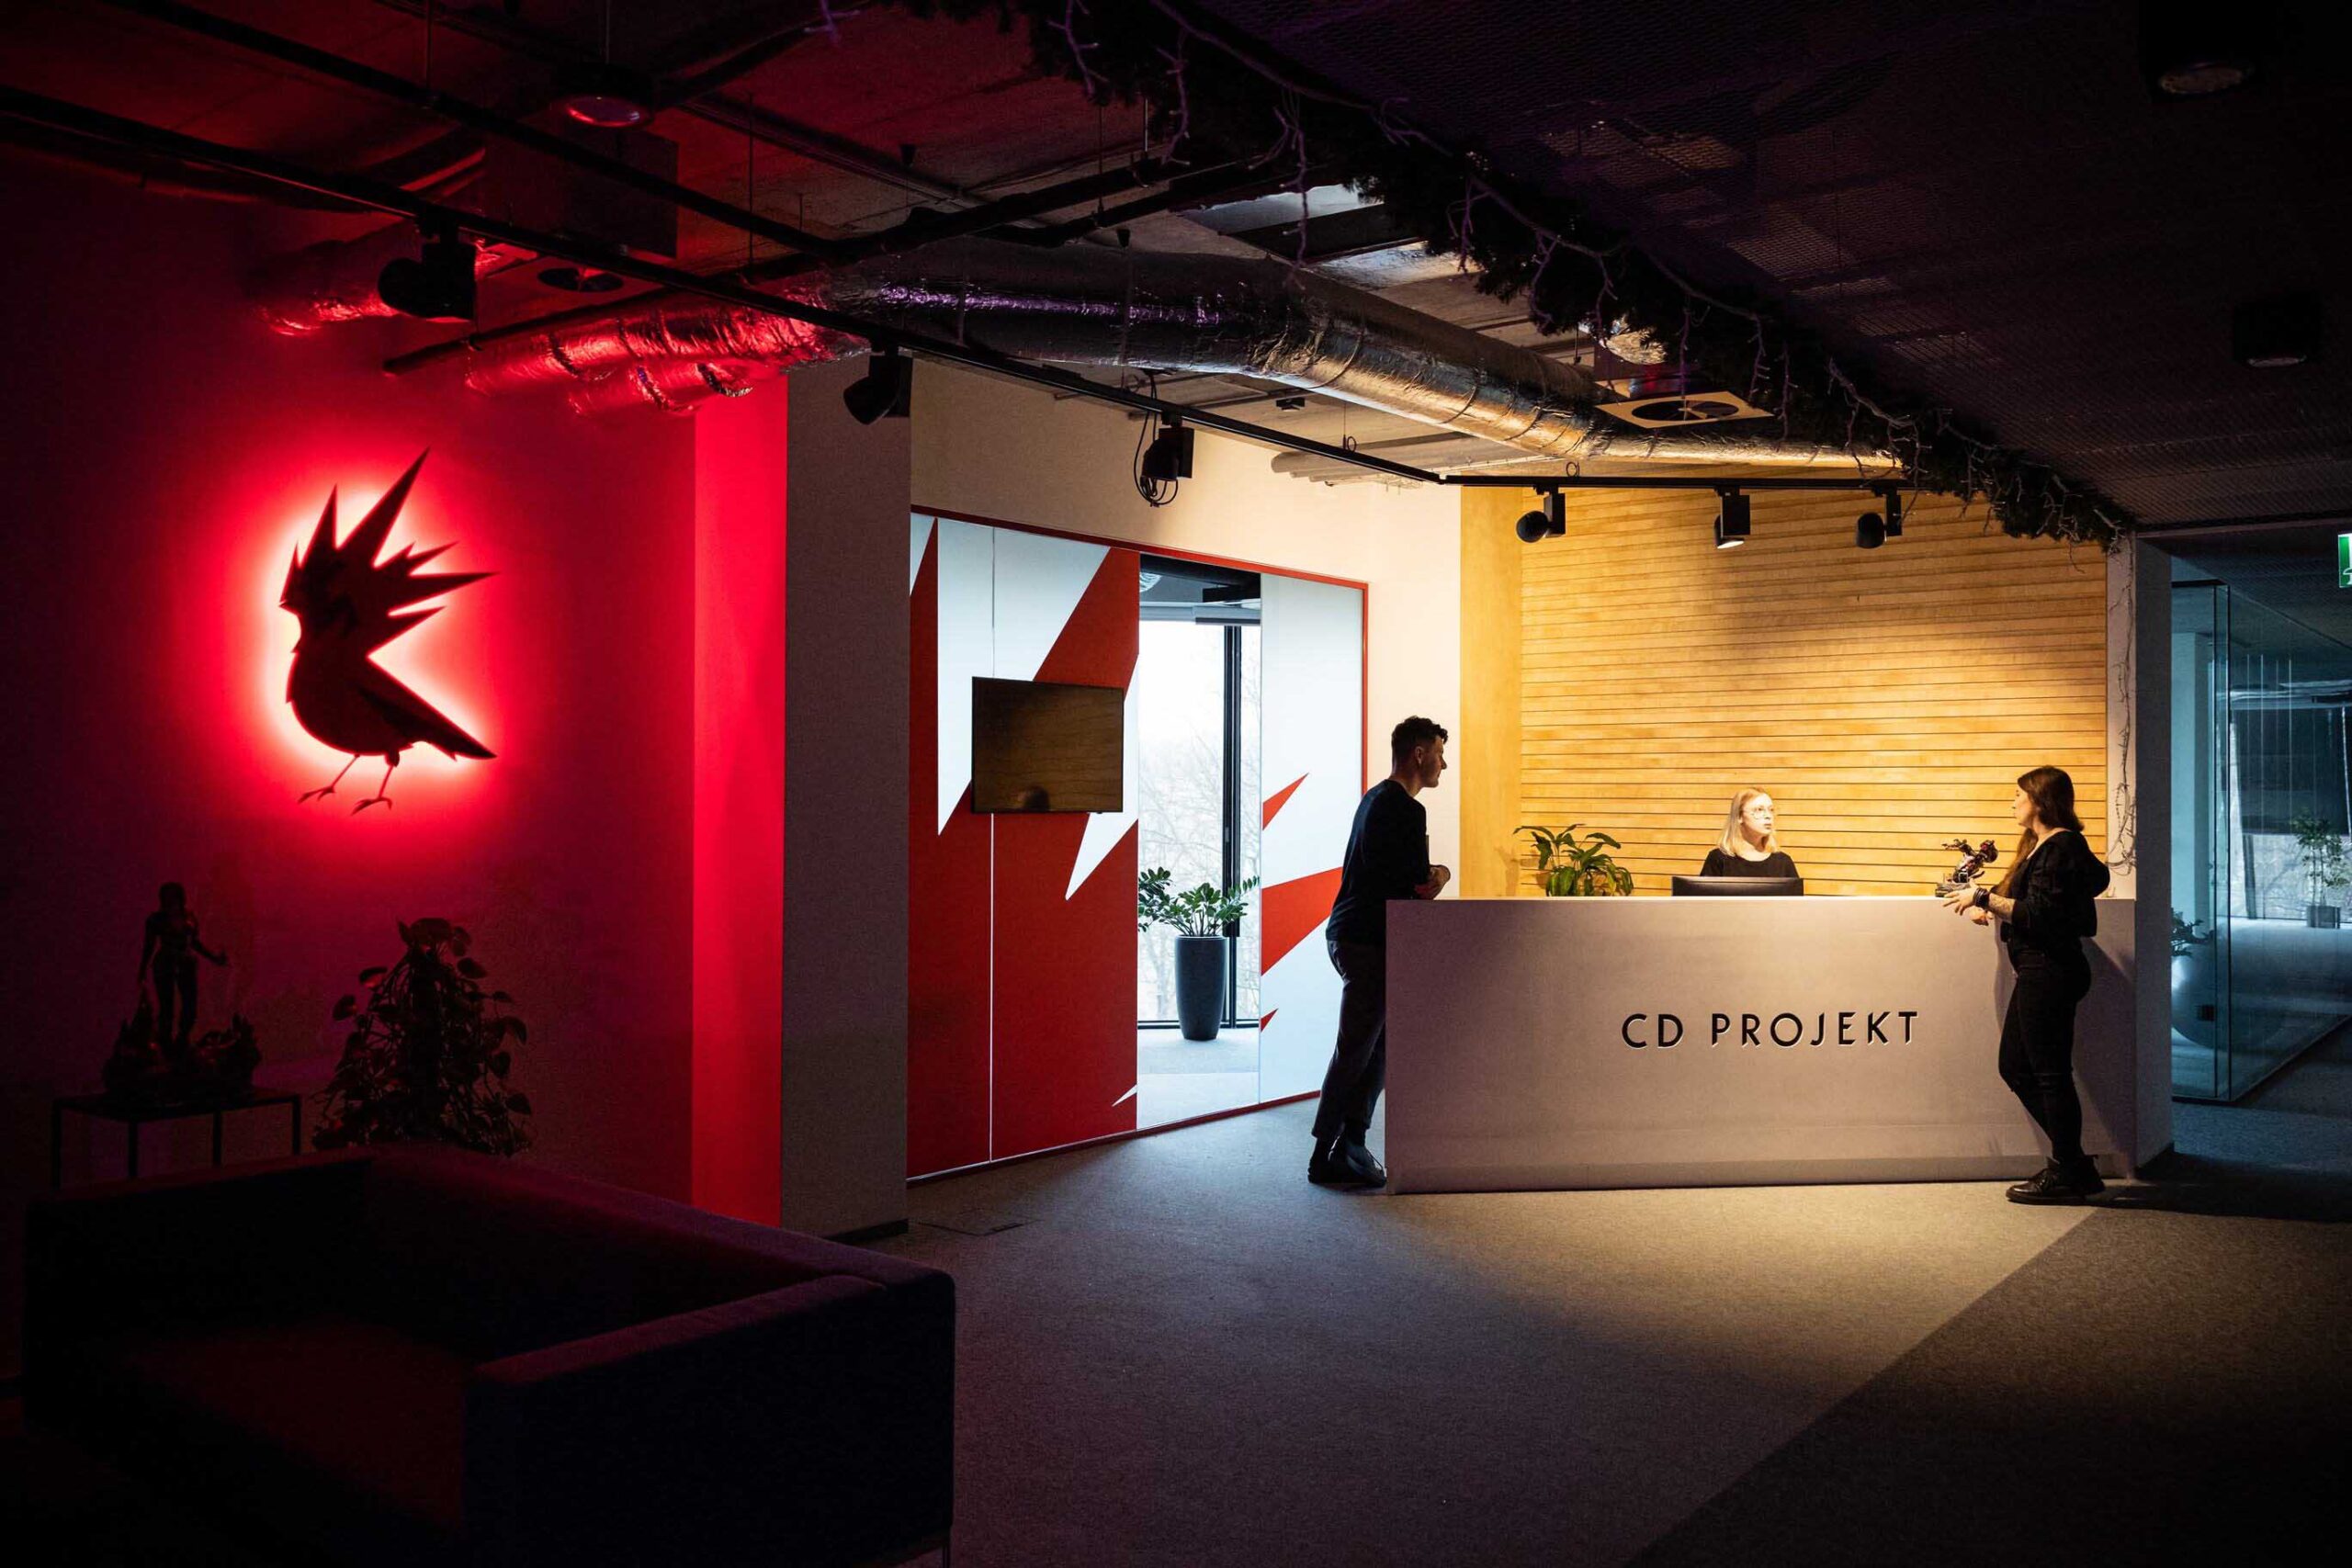 Recepcja CD Projekt z trzema osobami, oświetlonym logo czerwonego ptaka na ścianie po lewej stronie.